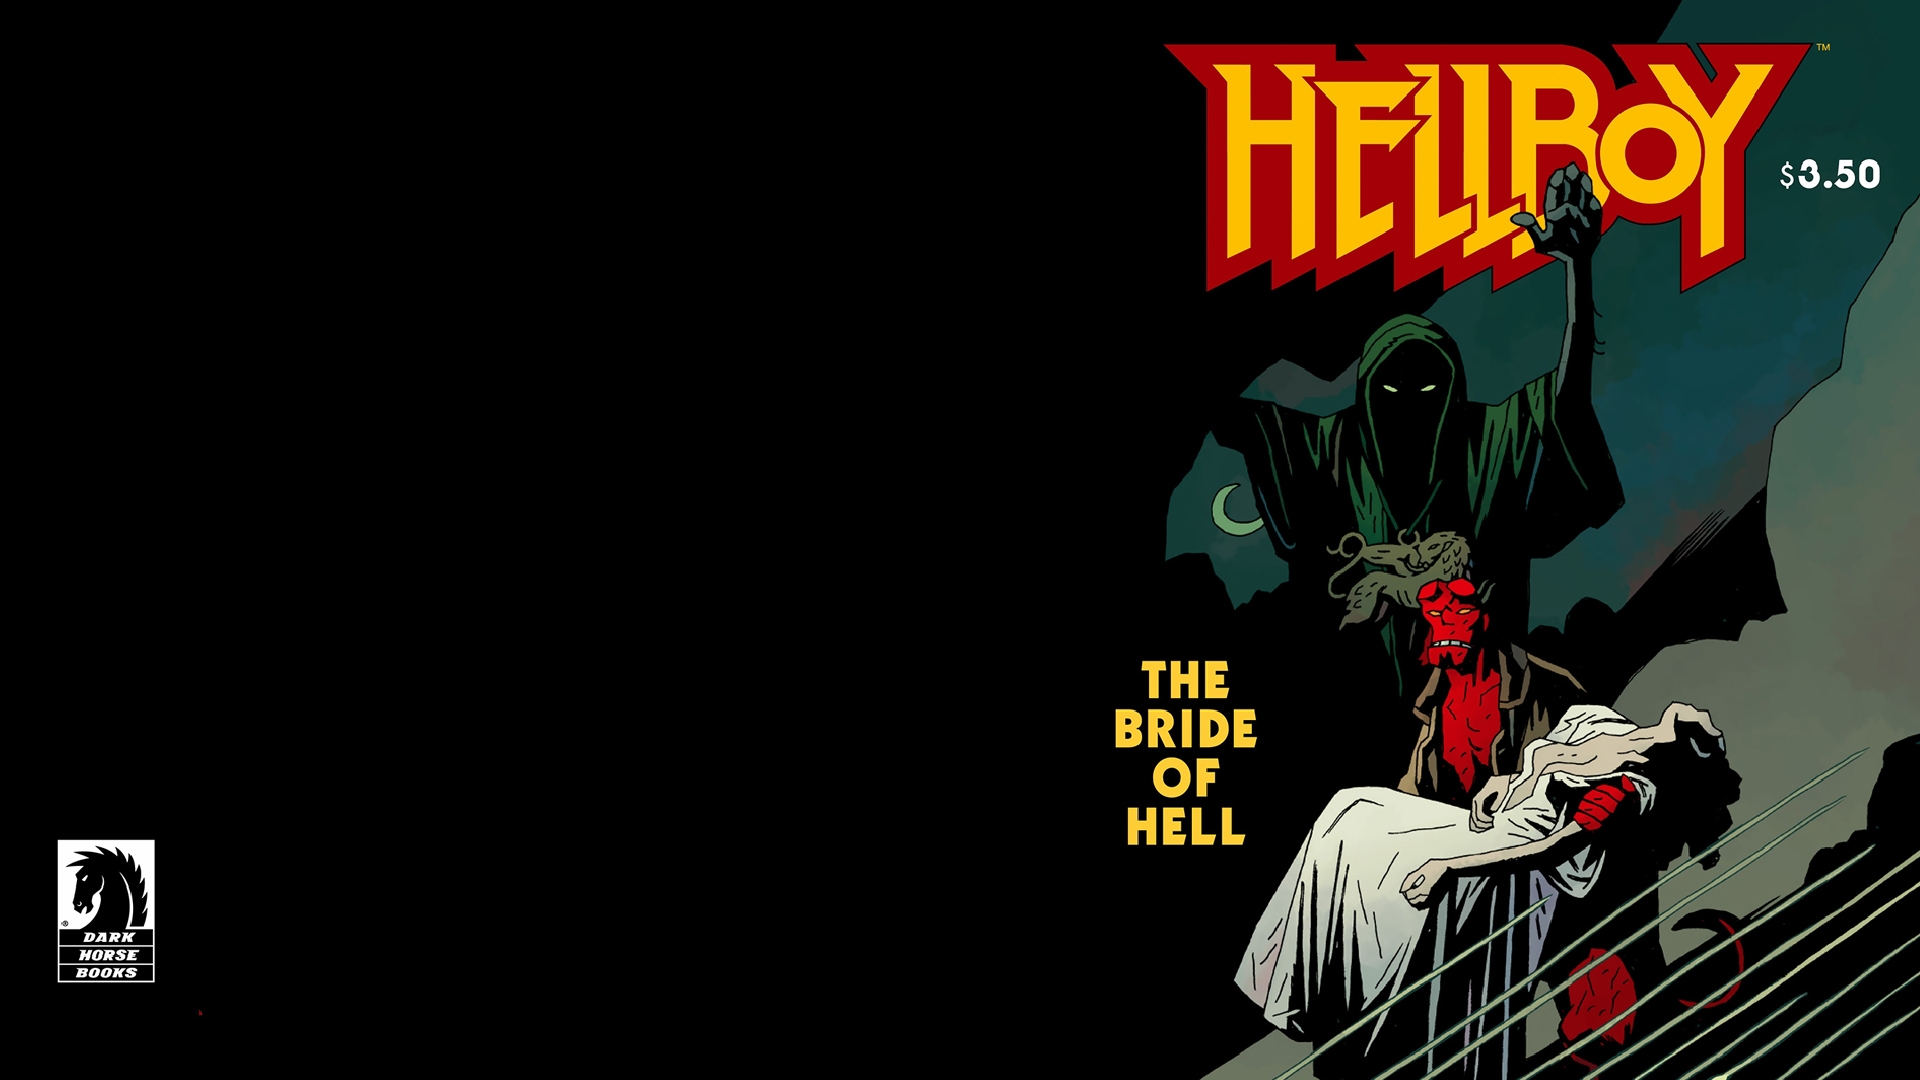 Hellboy 1920x1080